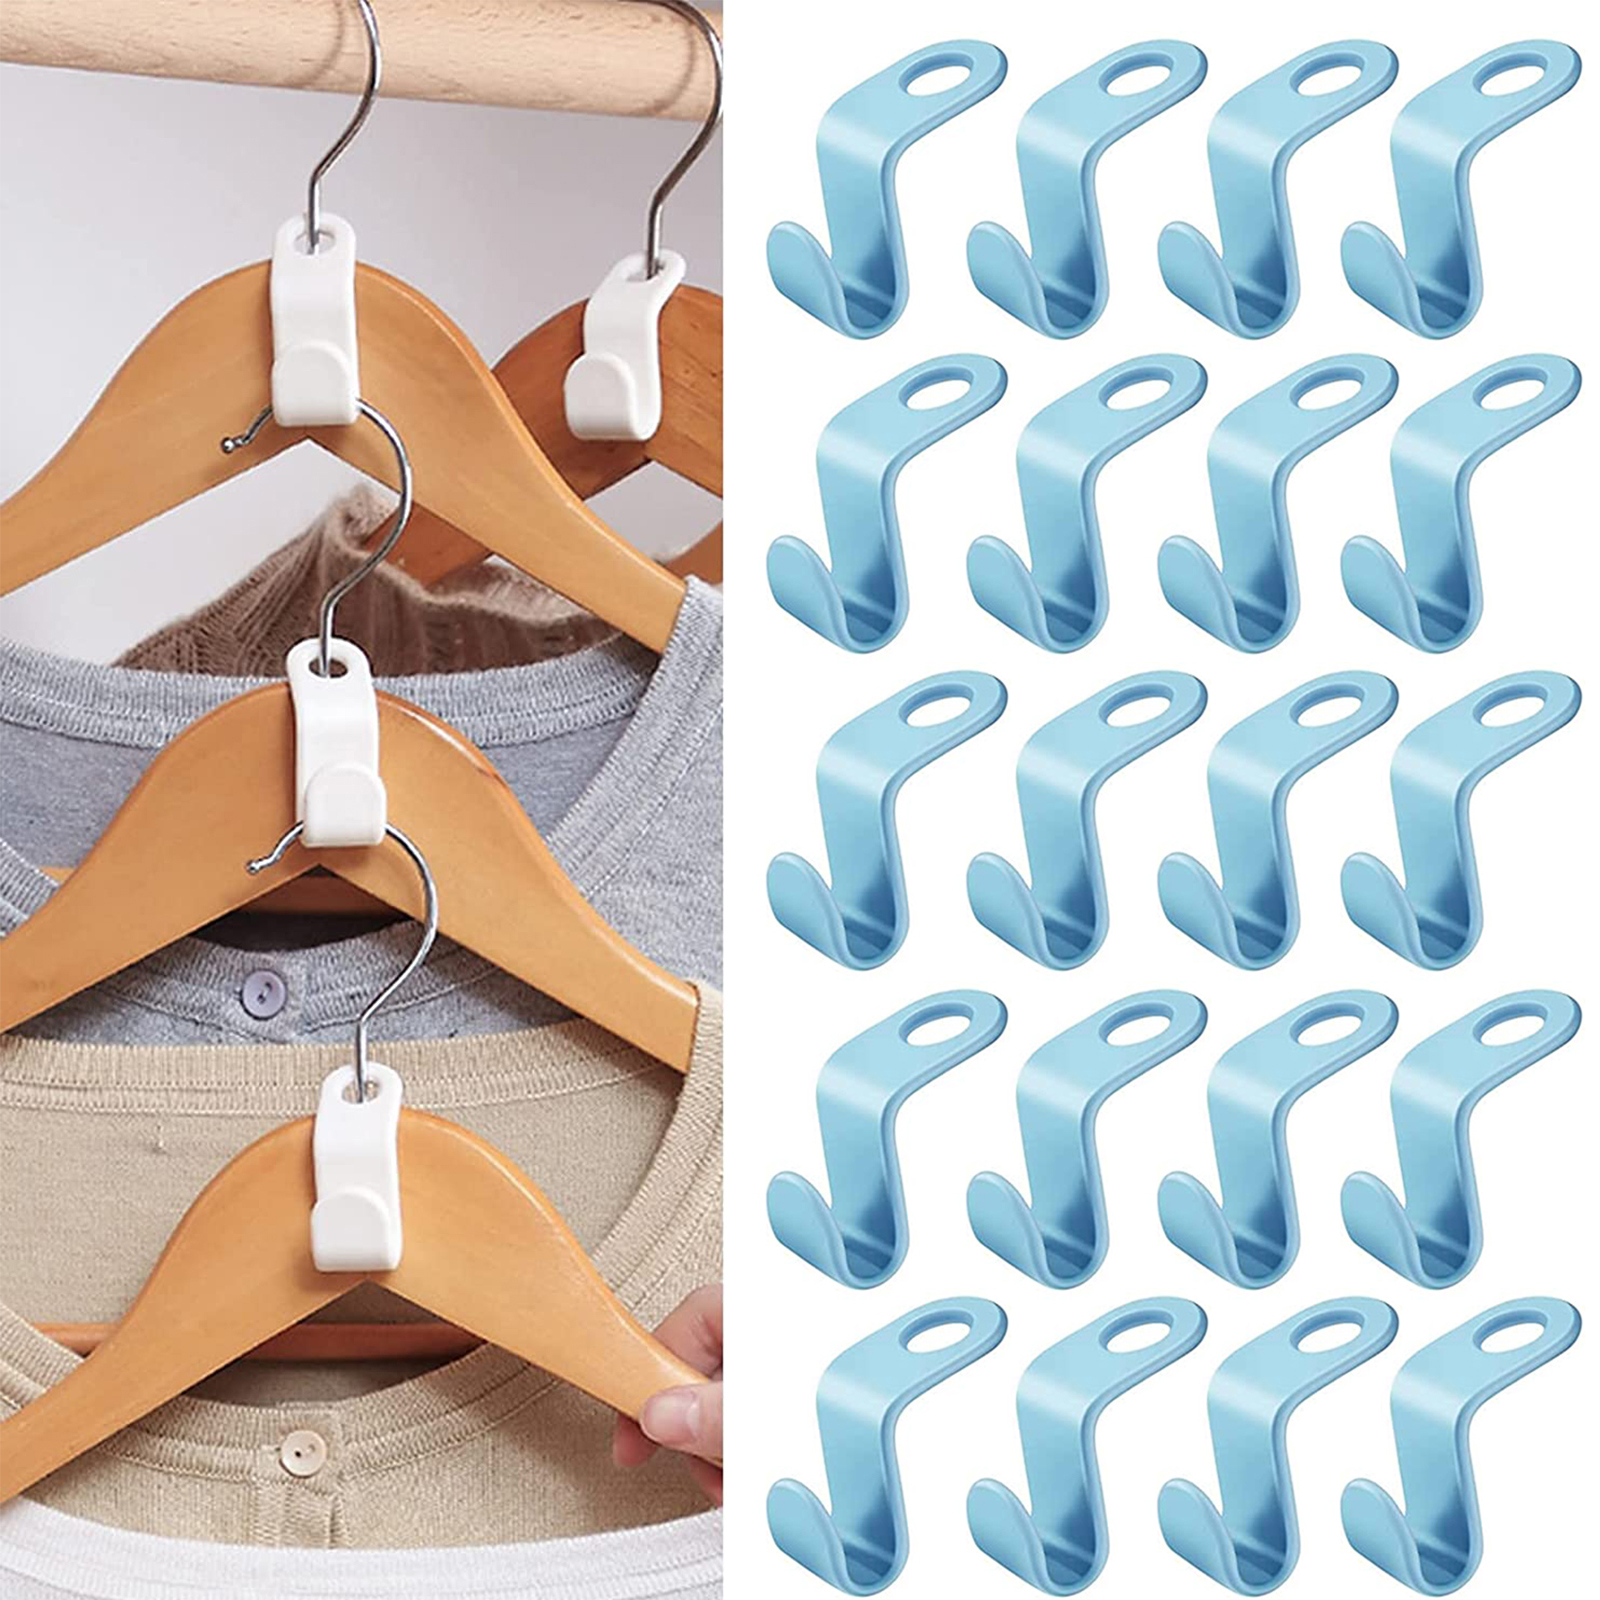 80 Versatile Cascading Hangers Non Slip Plastic Clothes Hangers w